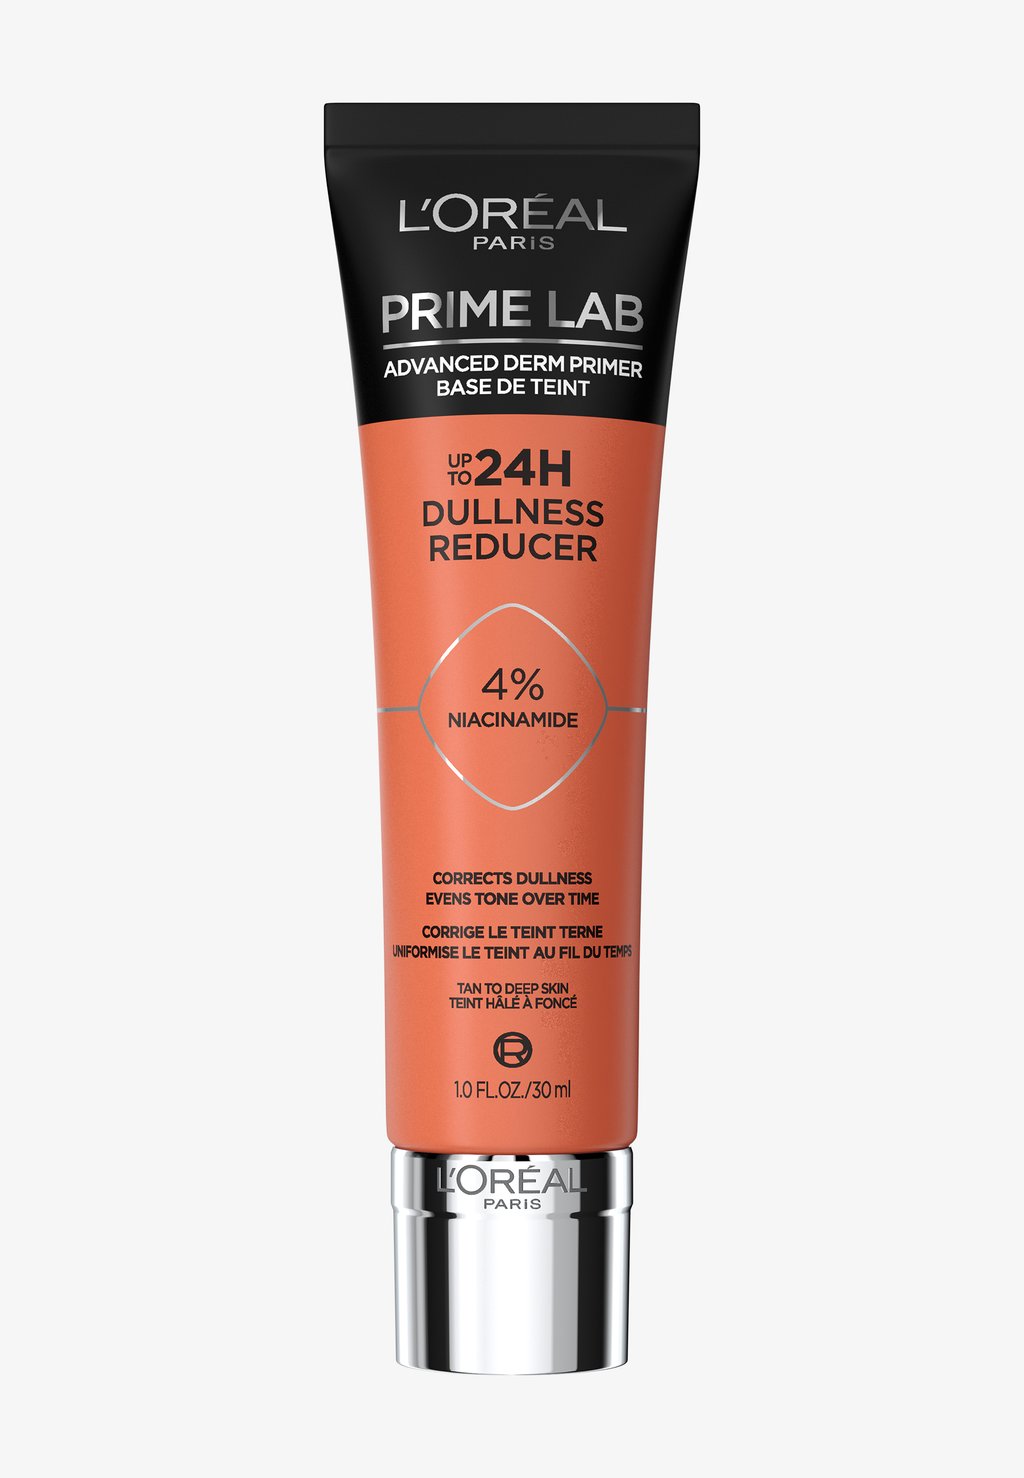 Праймер Prime Lab 24H L'Oréal Paris, цвет dullness reducer